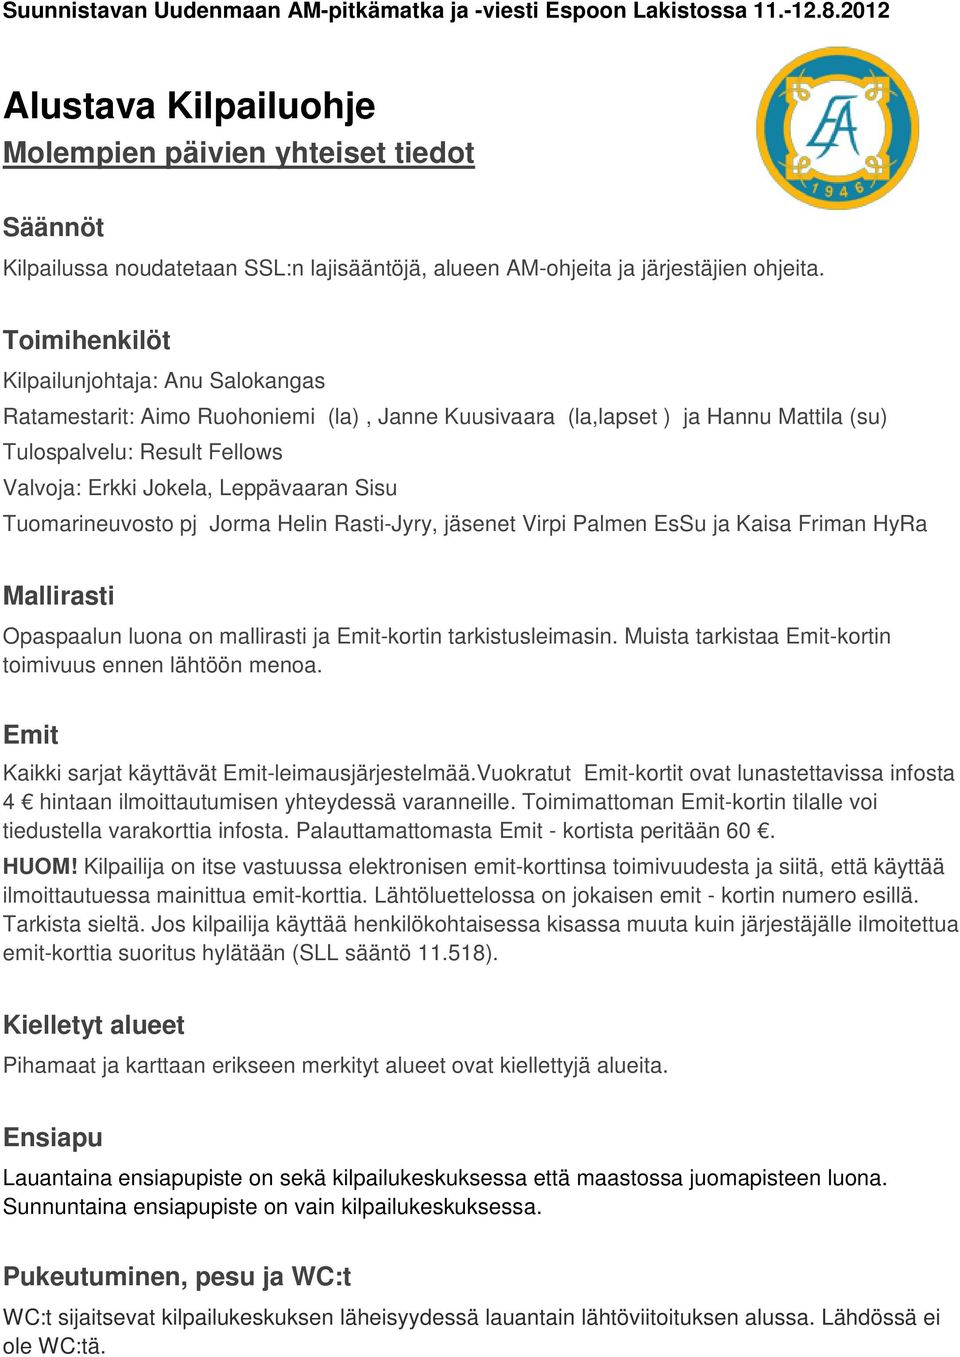 Toimihenkilöt Kilpailunjohtaja: Anu Salokangas Ratamestarit: Aimo Ruohoniemi (la), Janne Kuusivaara (la,lapset ) ja Hannu Mattila (su) Tulospalvelu: Result Fellows Valvoja: Erkki Jokela, Leppävaaran